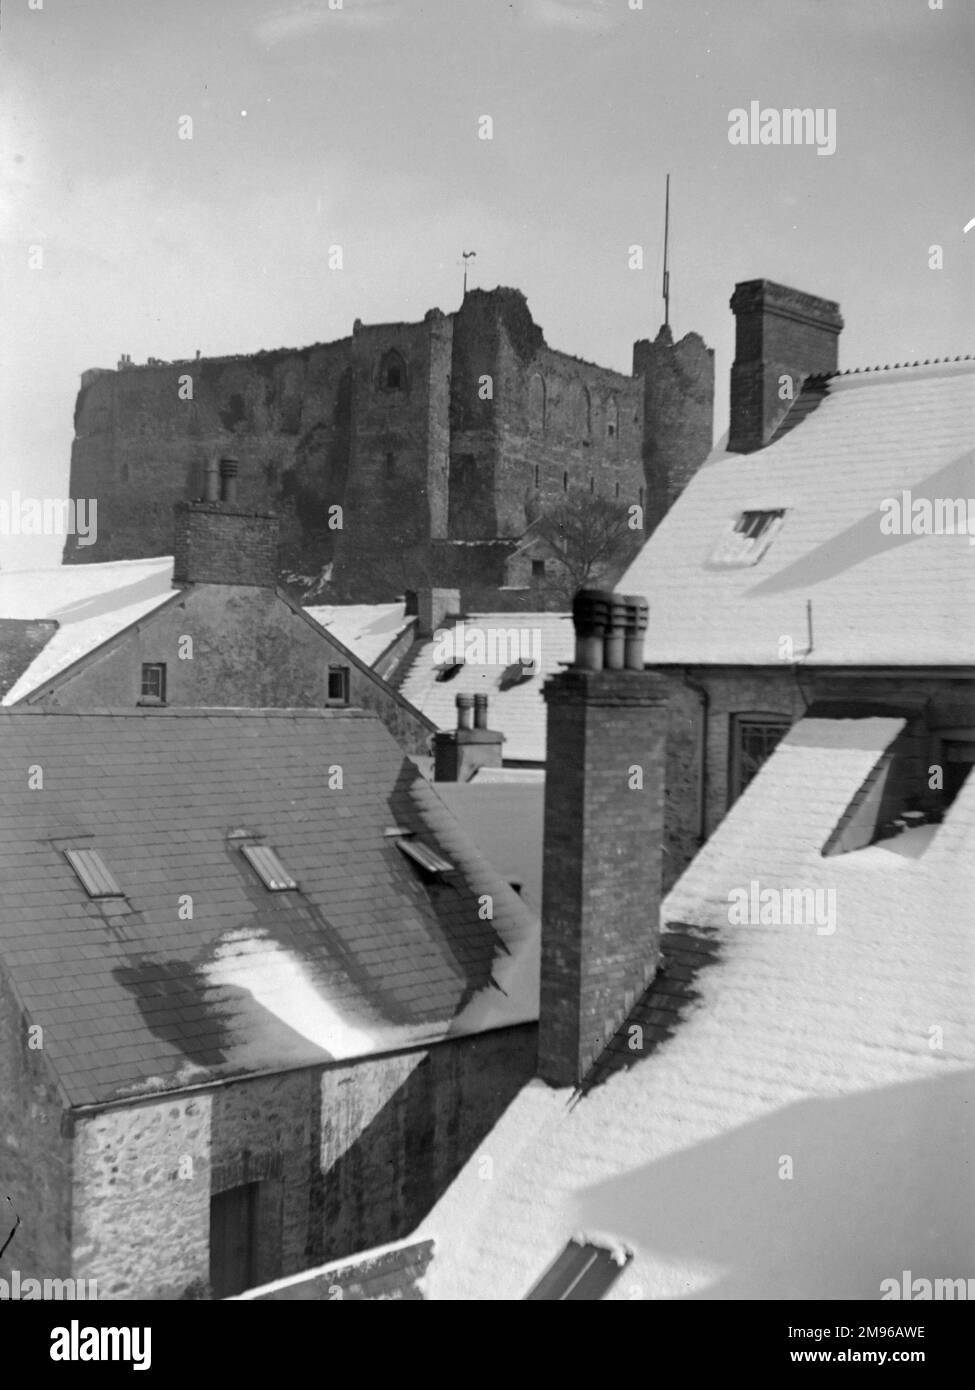 Vista del Castello attraverso i tetti, da un edificio in High Street, Haverfordwest, Pembrokeshire, Dyfed, Galles del Sud. C'è stata una recente caduta di neve. Il castello risale al 12th ° secolo. Foto Stock